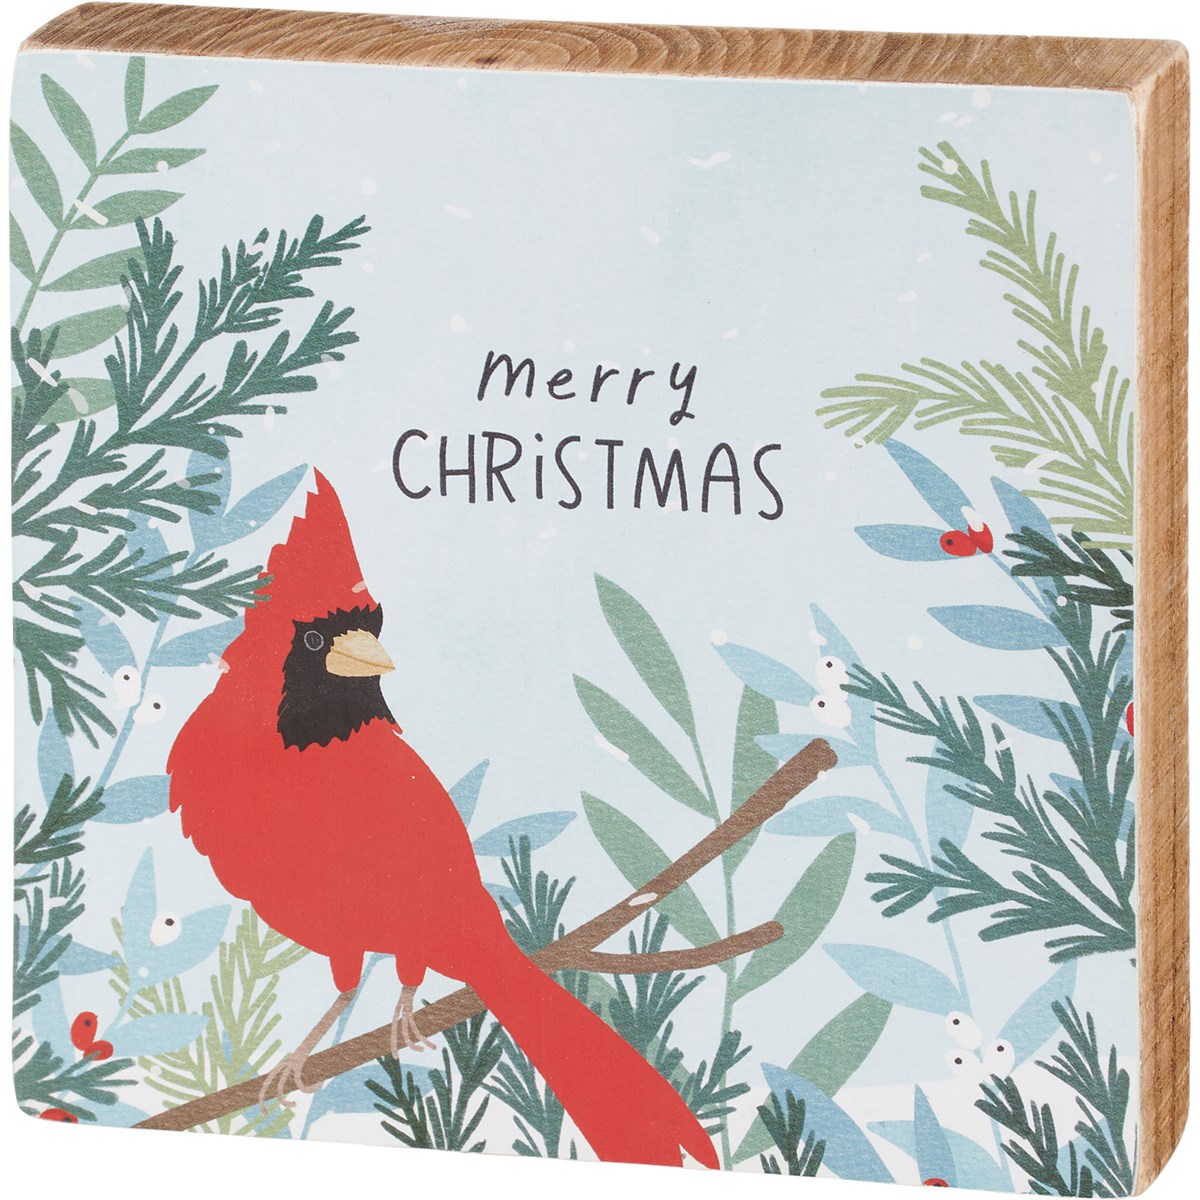 Merry Christmas Cardinal Block Sign - Wood, Paper